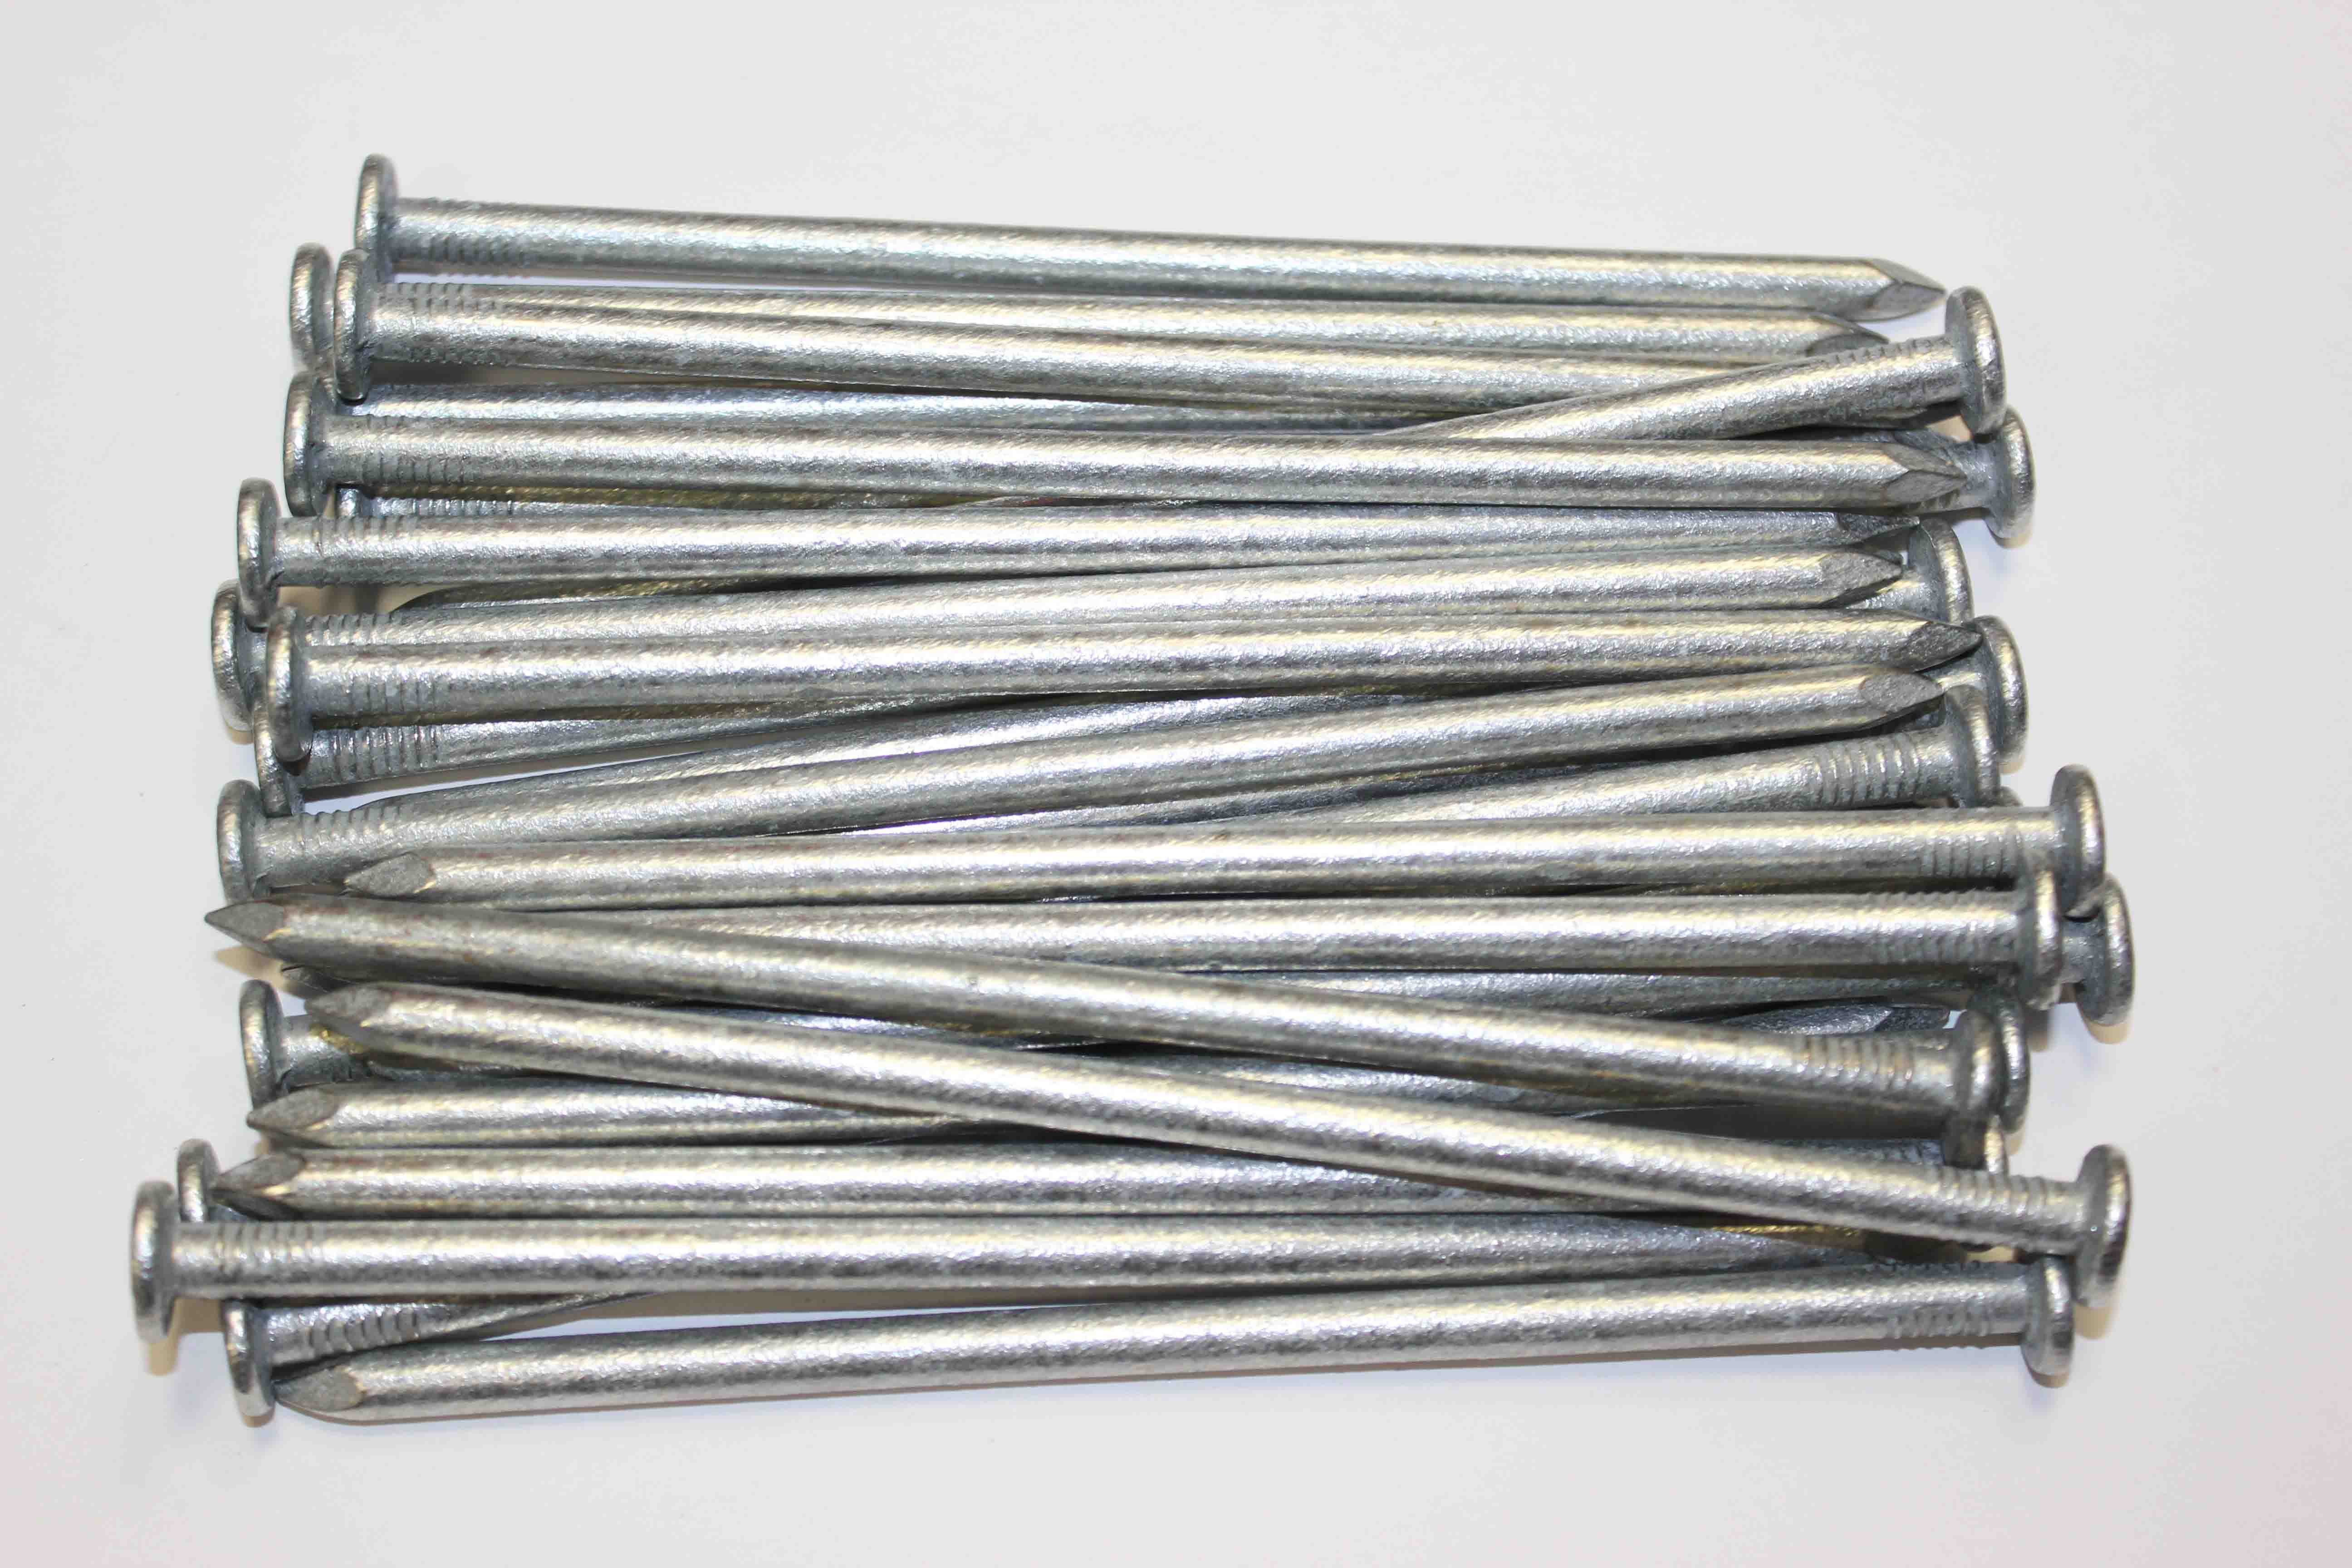 6 inch 150mm round wire nails